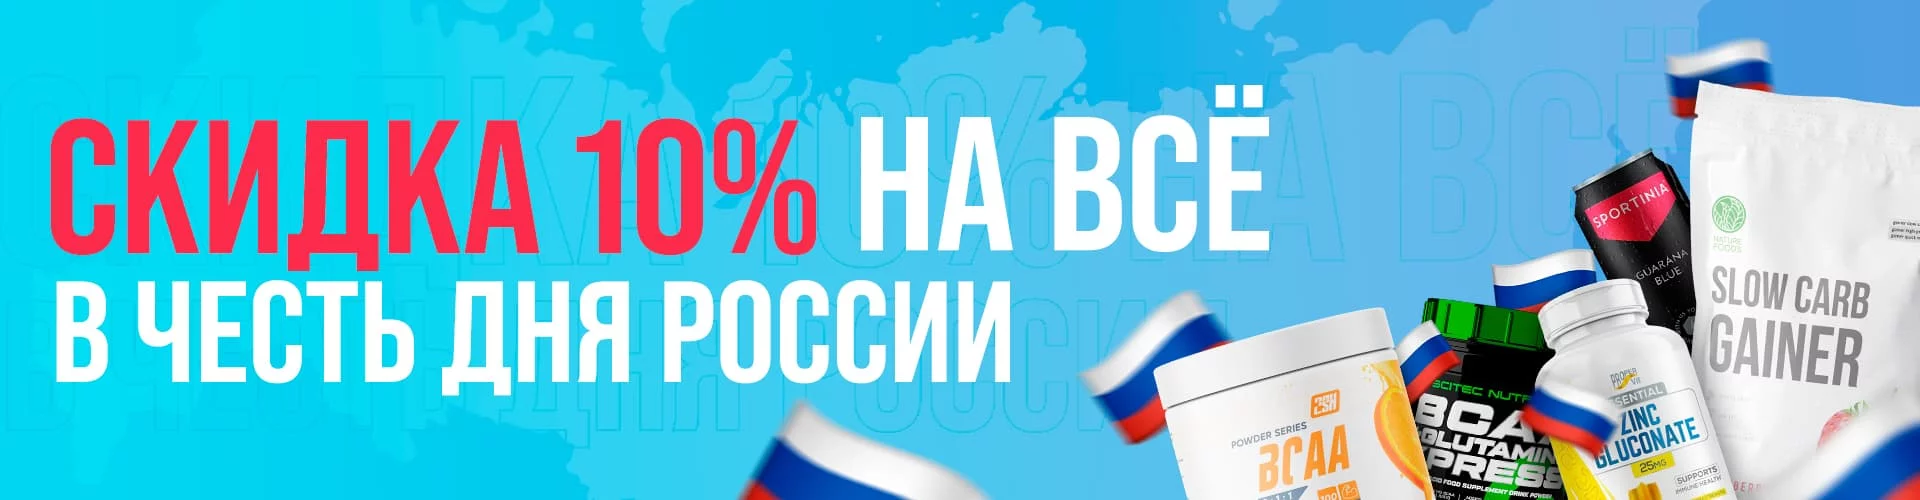 Скидка 10% в честь дня России!